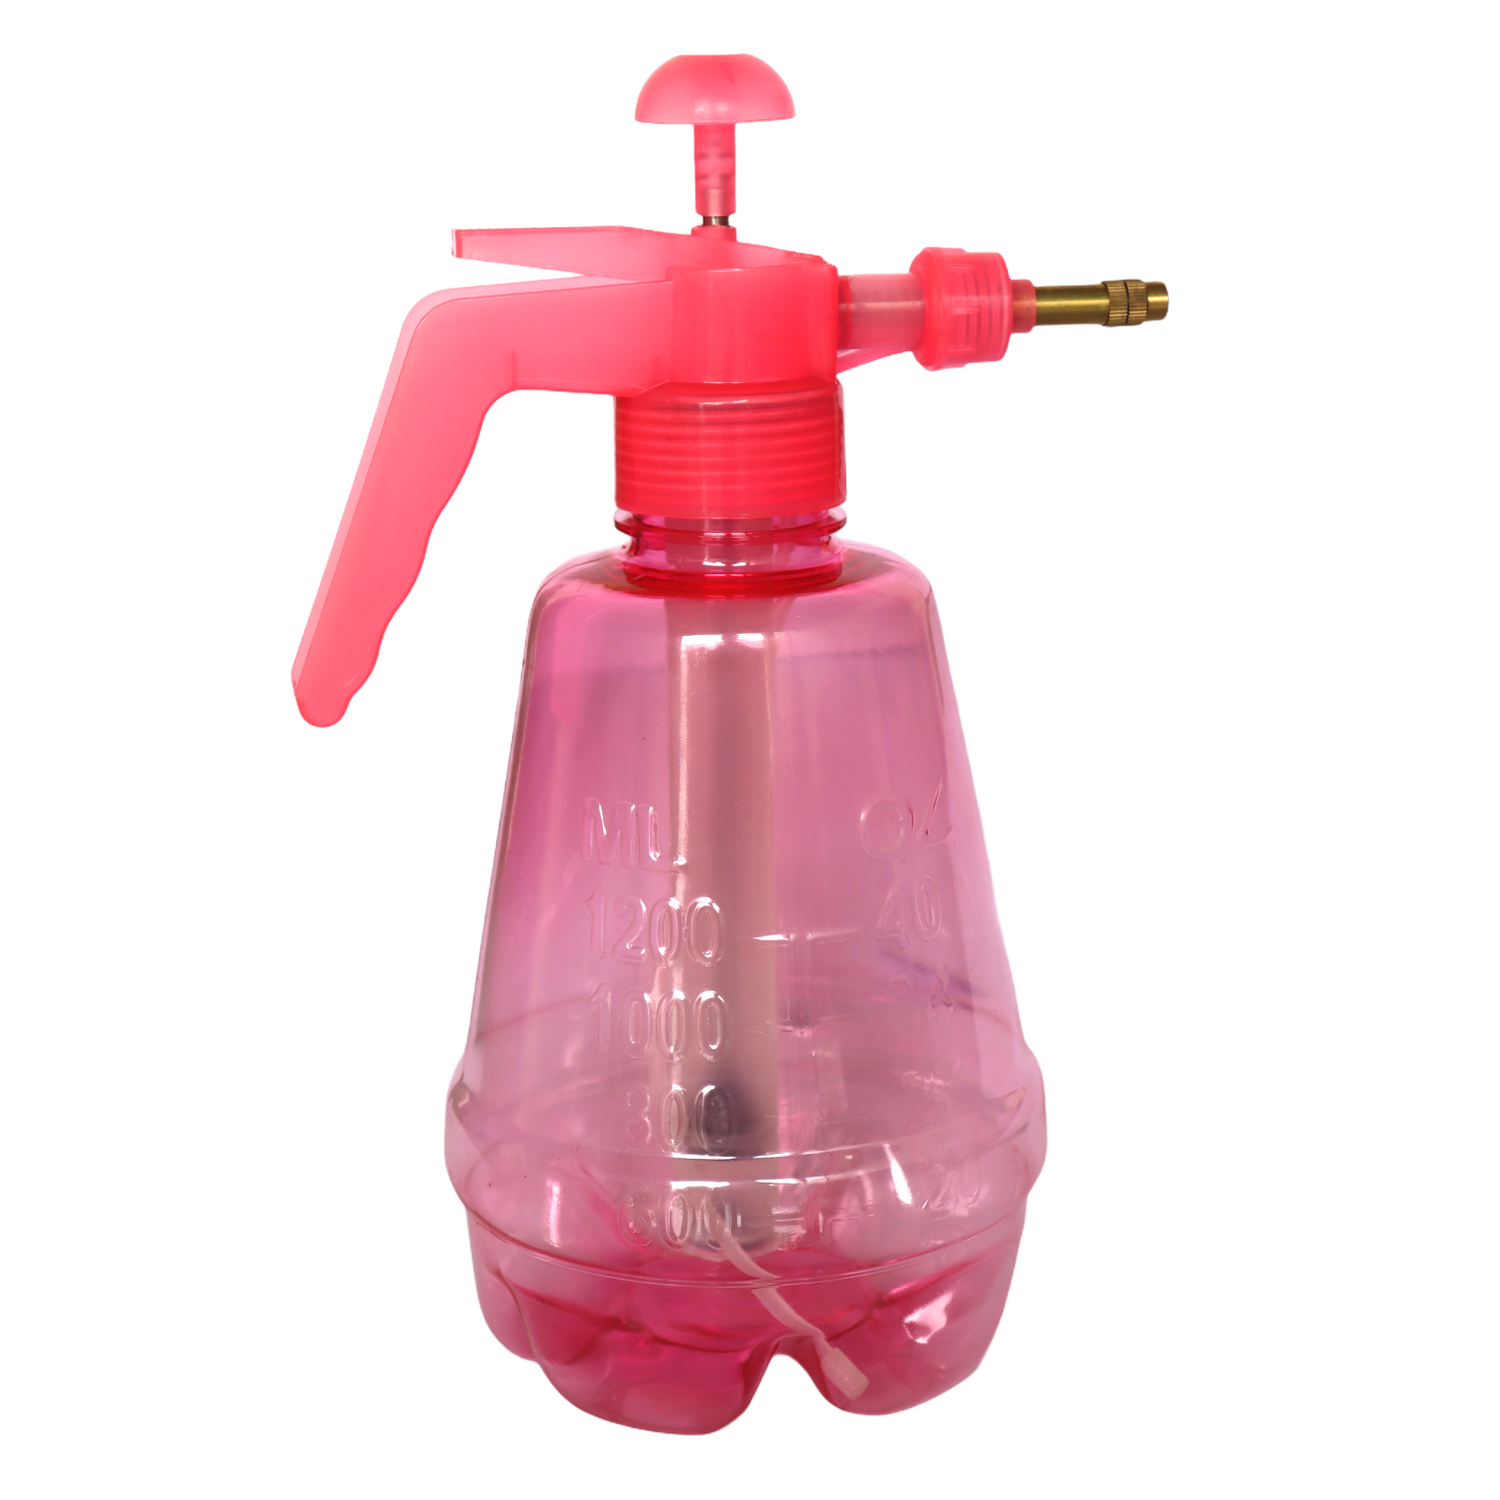 Water Sprayer Hand-Held Pump Pressure Garden Sprayer - 1.5 Litre